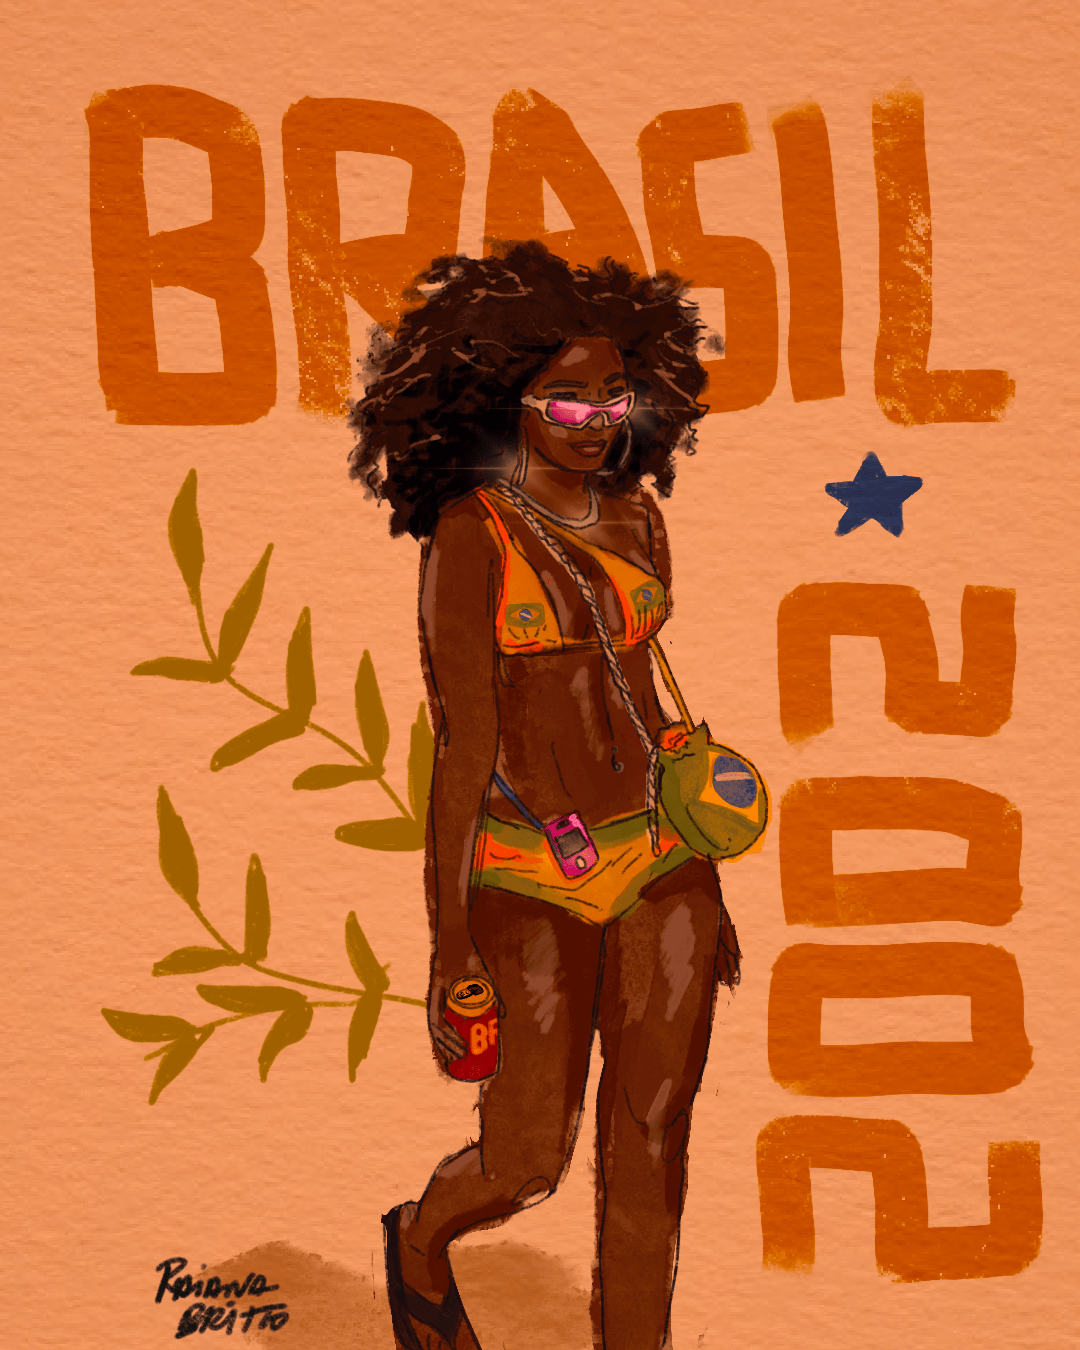 art arte Brasil Brazil copa do mundo favela Ilustração ilustration periferia world cup